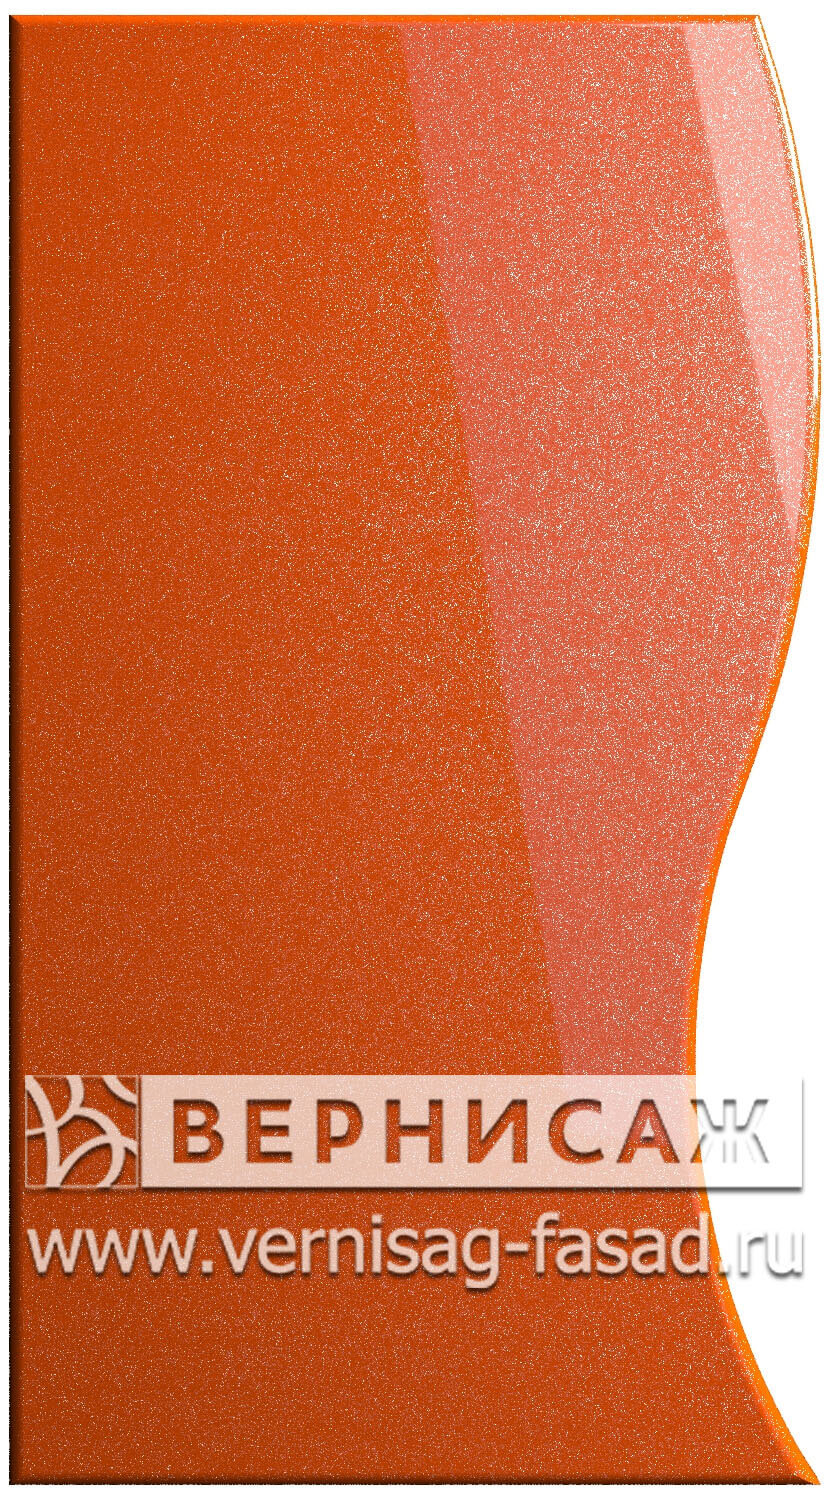 Фасады в пленке ПВХ, Фрезеровка № 22, цвет Сигнал оранж металлик